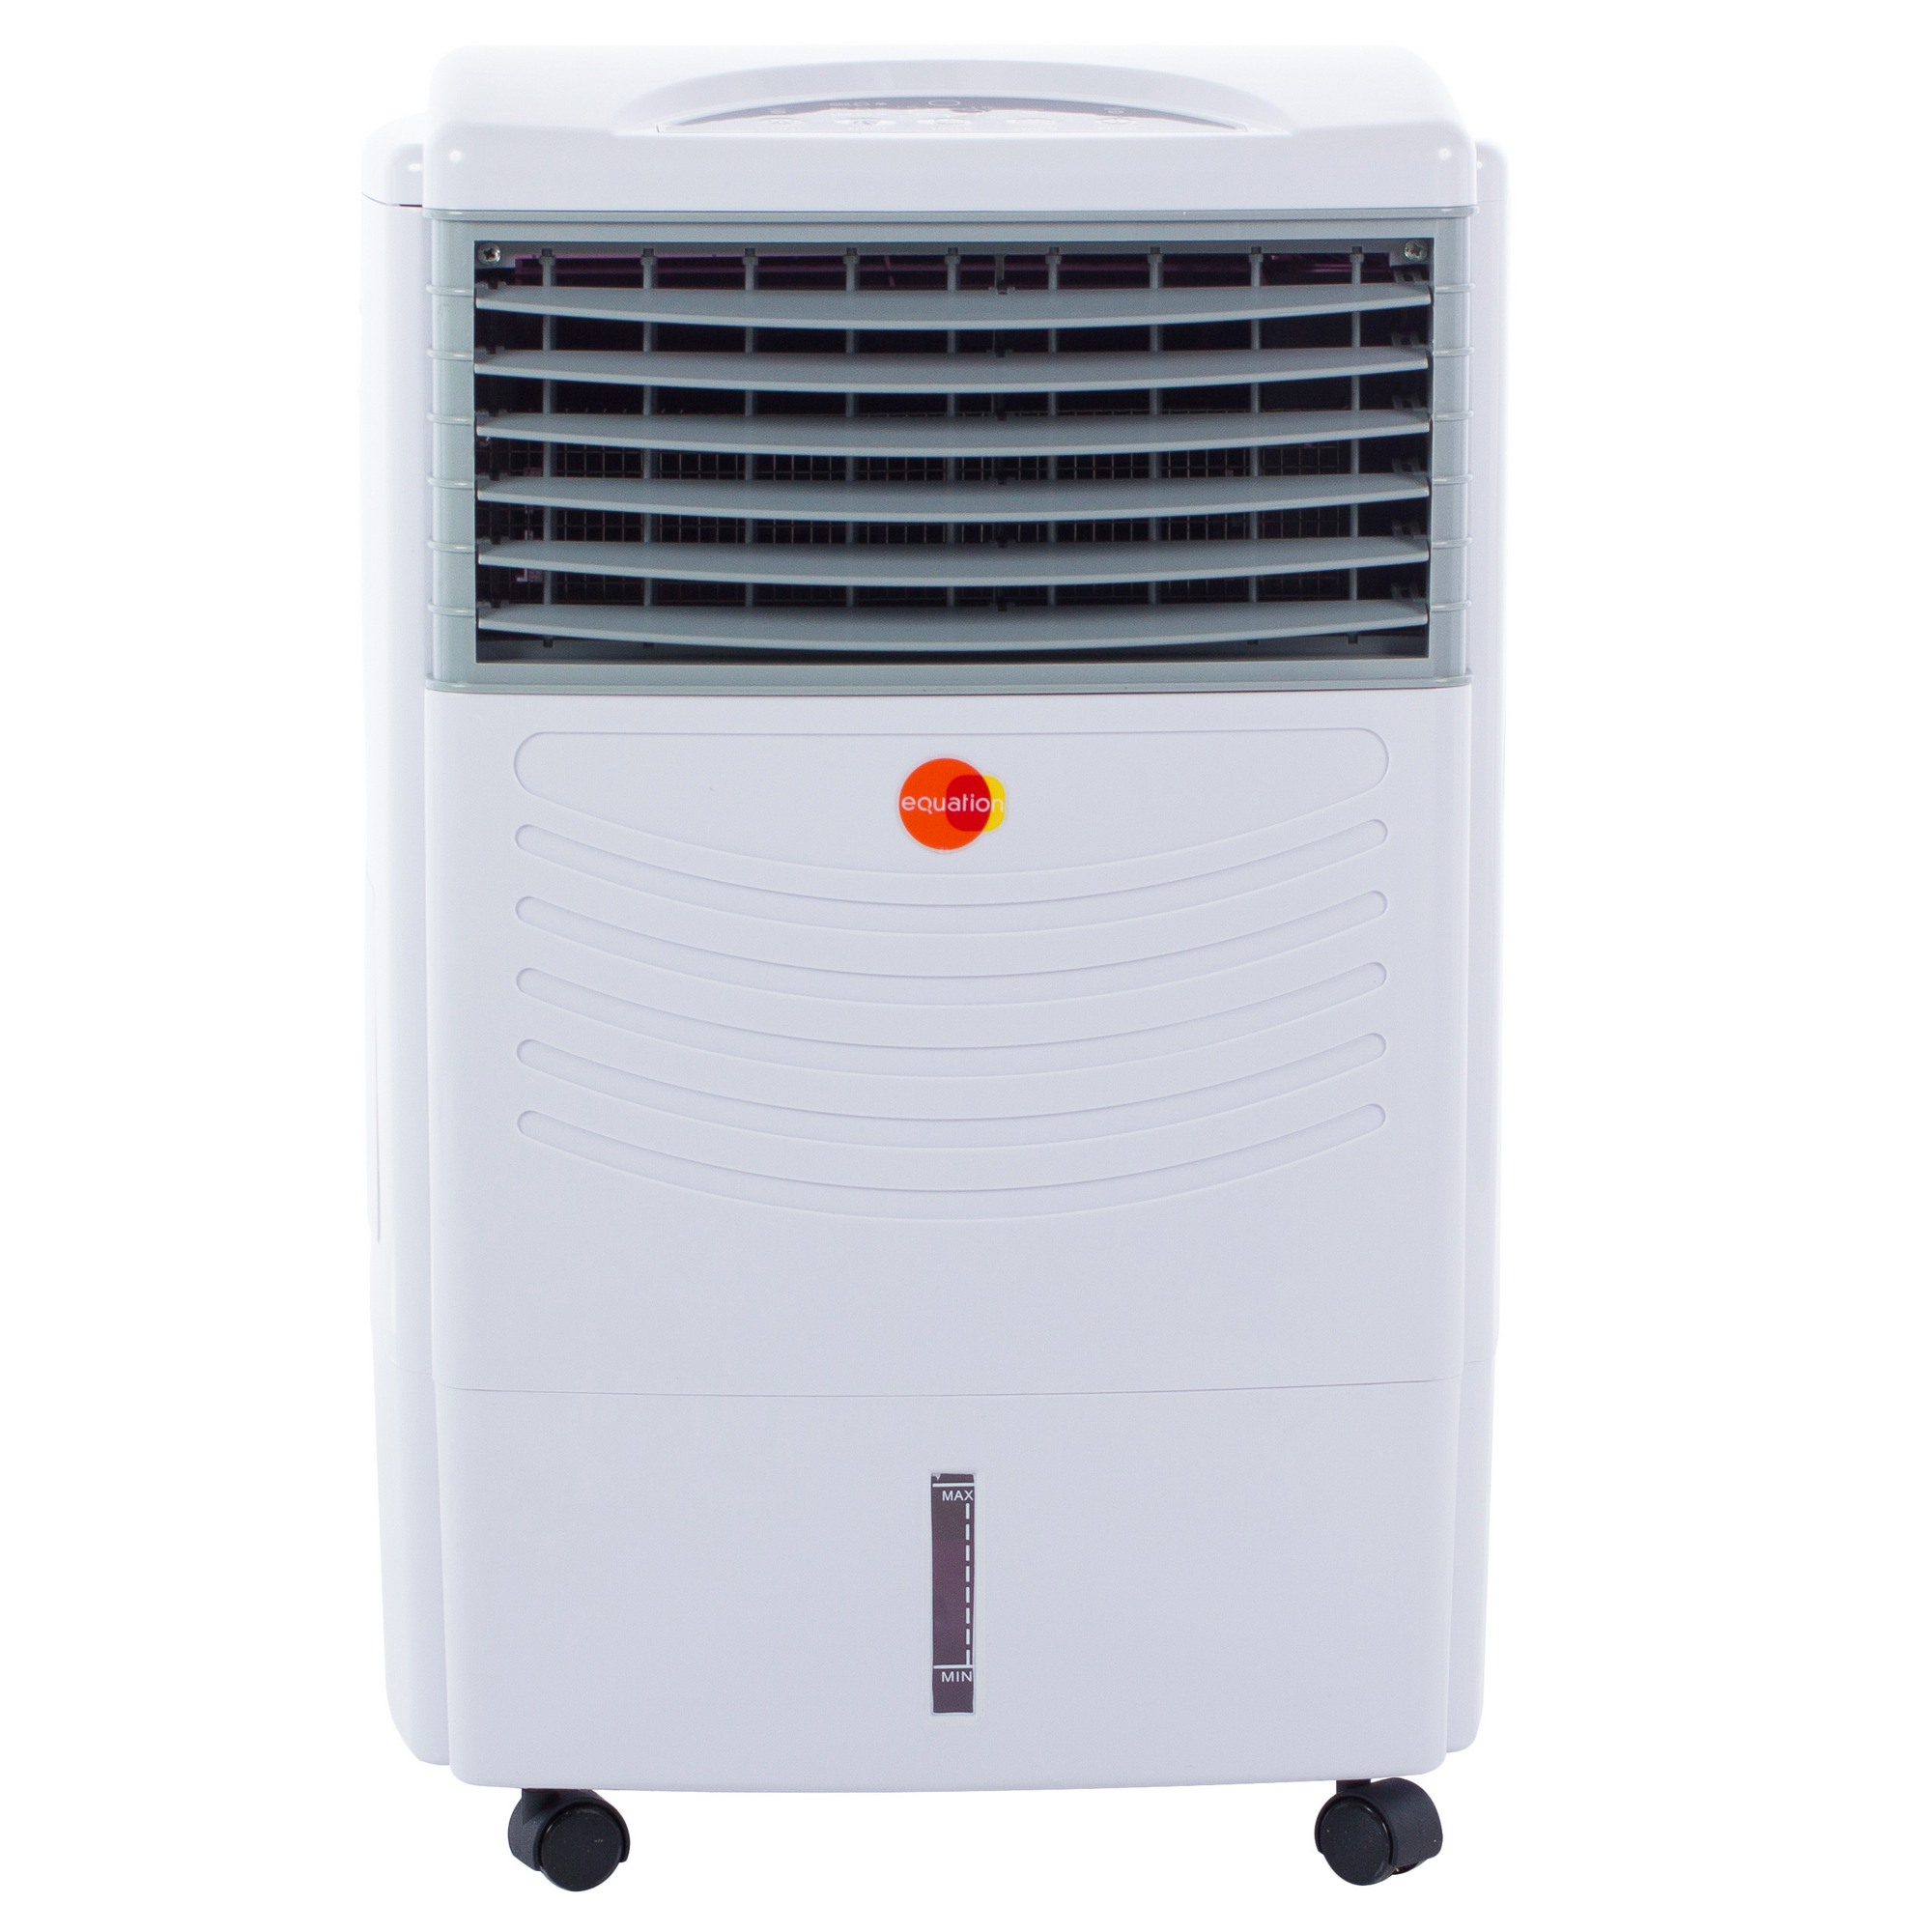 Охладитель воздуха для комнаты. Охладитель воздуха CMI lk65-60. Напольный воздухоохладитель LK 65-60. Охладитель воздуха equation 70w 300 BTU охлаждение. Охладитель воздуха CMI lk65-60 65 Вт.